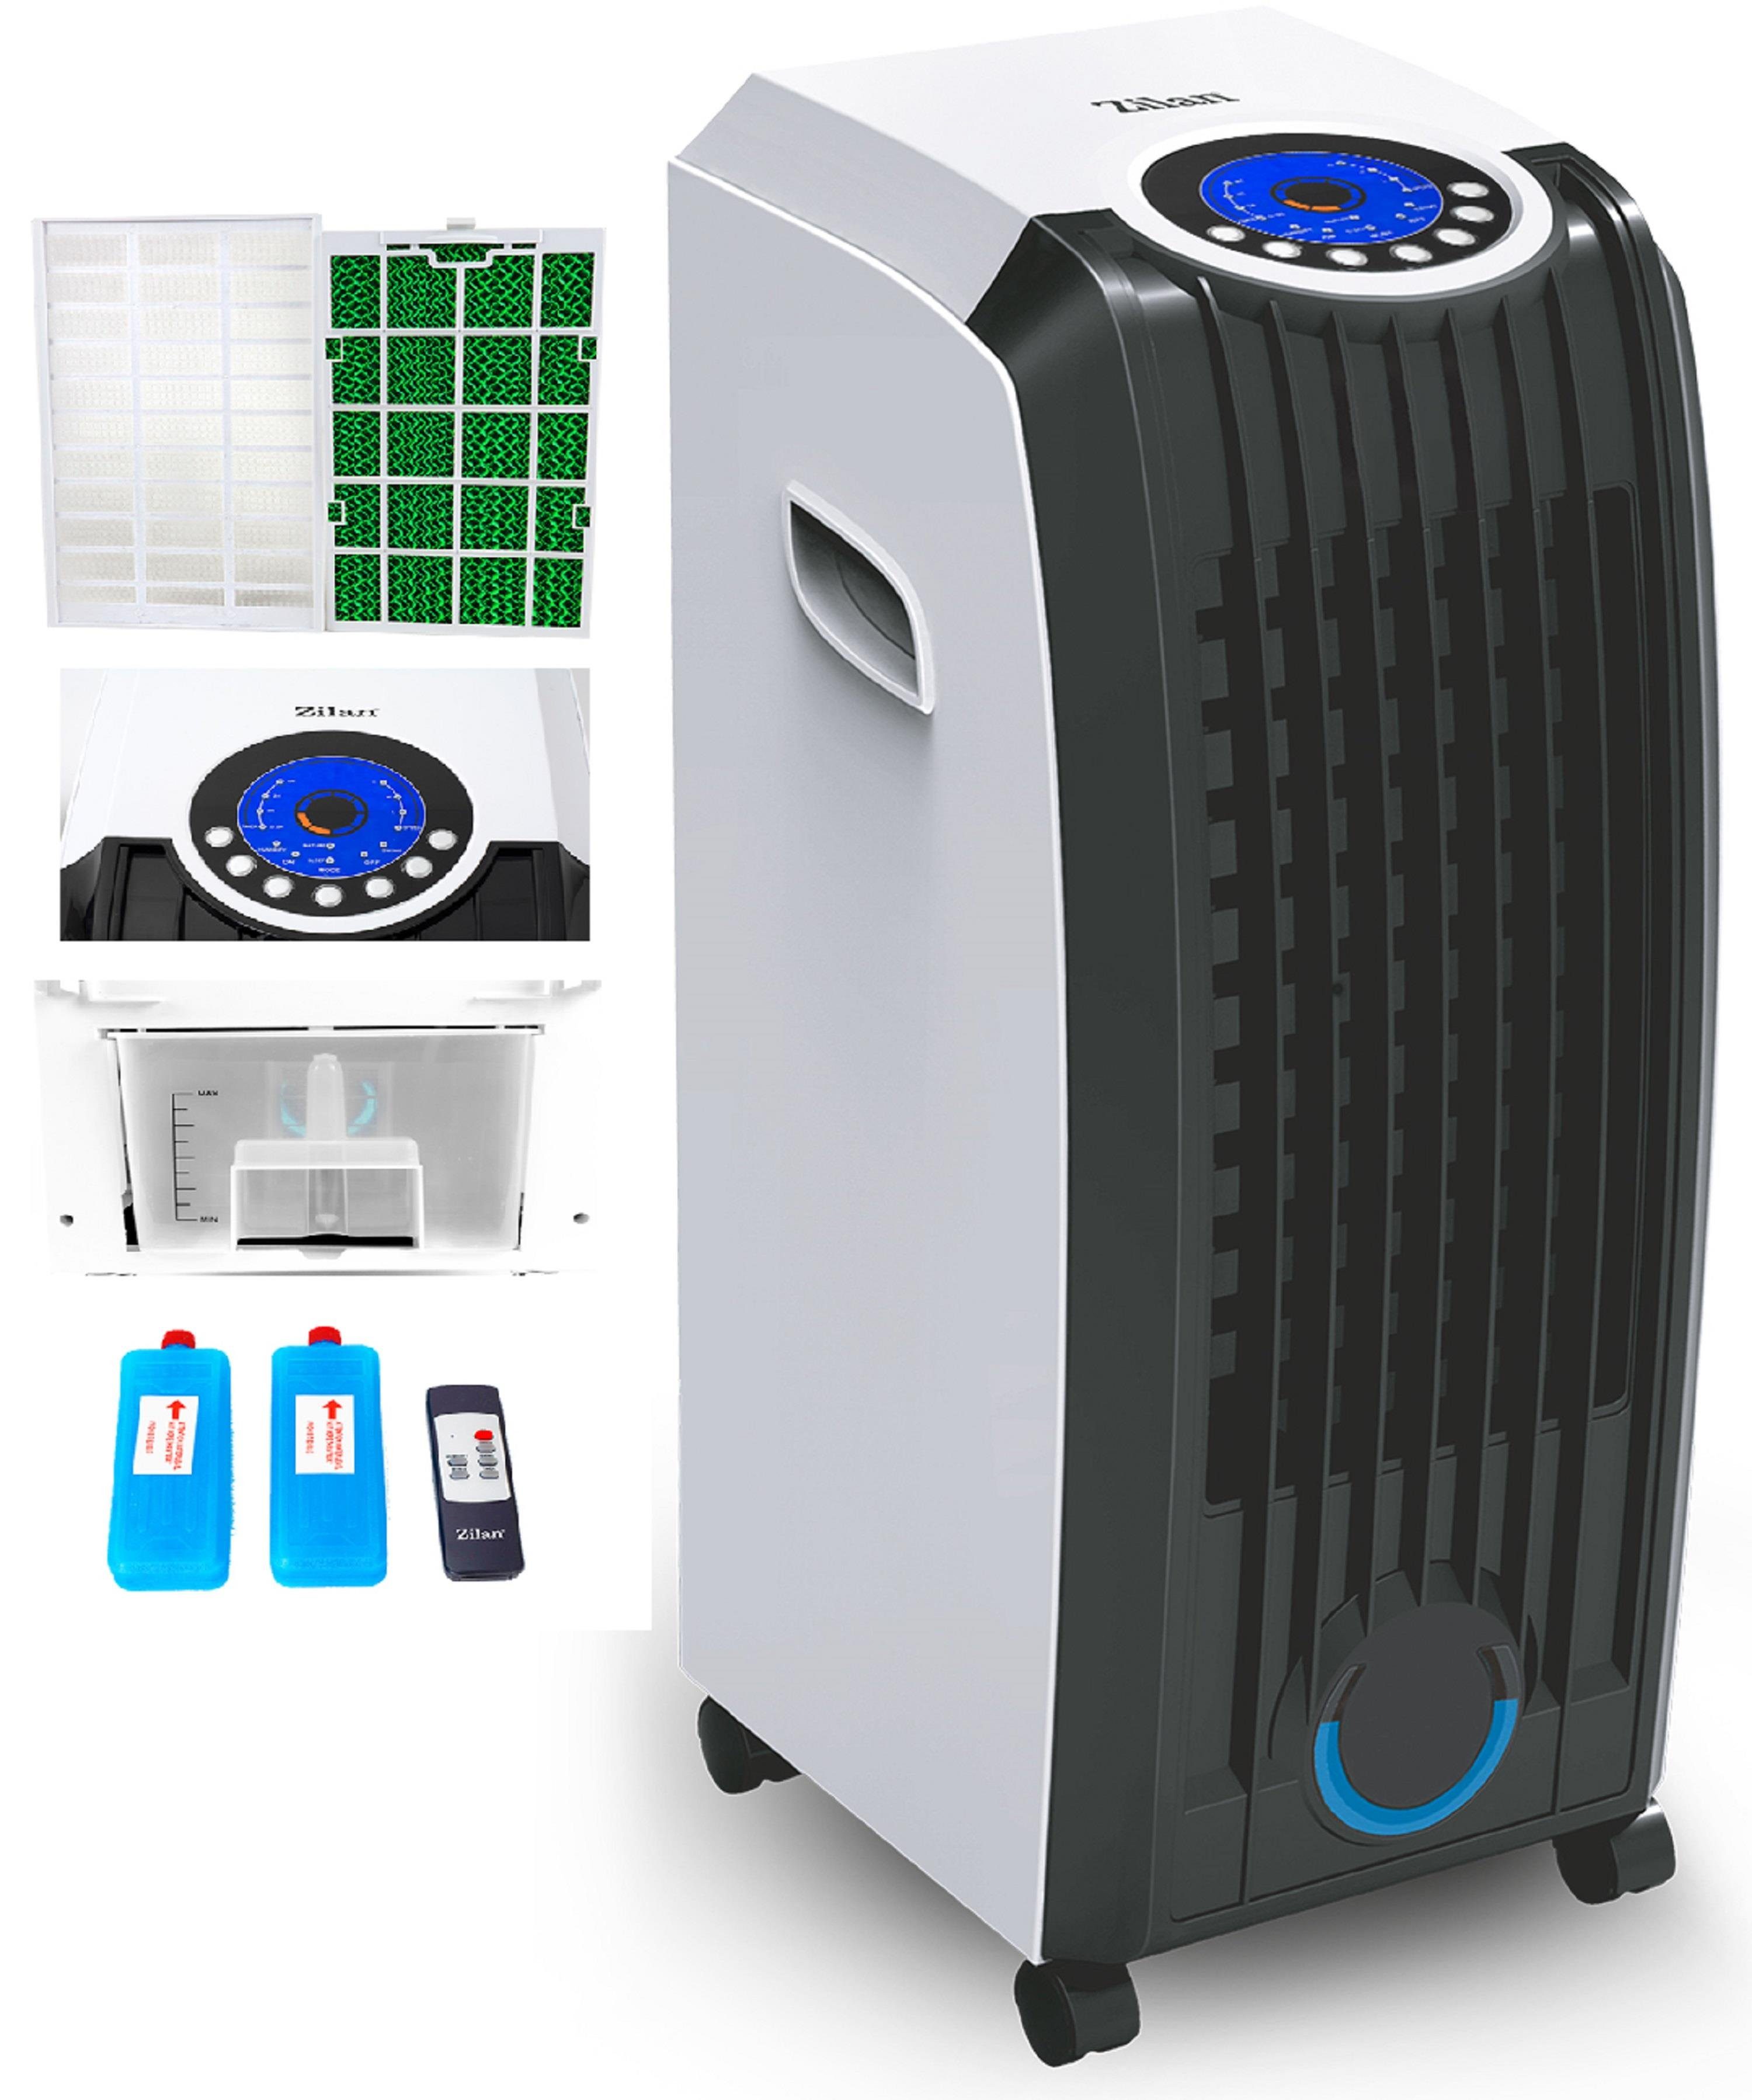 Zilan Ventilatorkombigerät ZLN-3390 Aircooler, Oszillierend, 8 Liter Wassertank, Fernbedienung | Standventilatoren